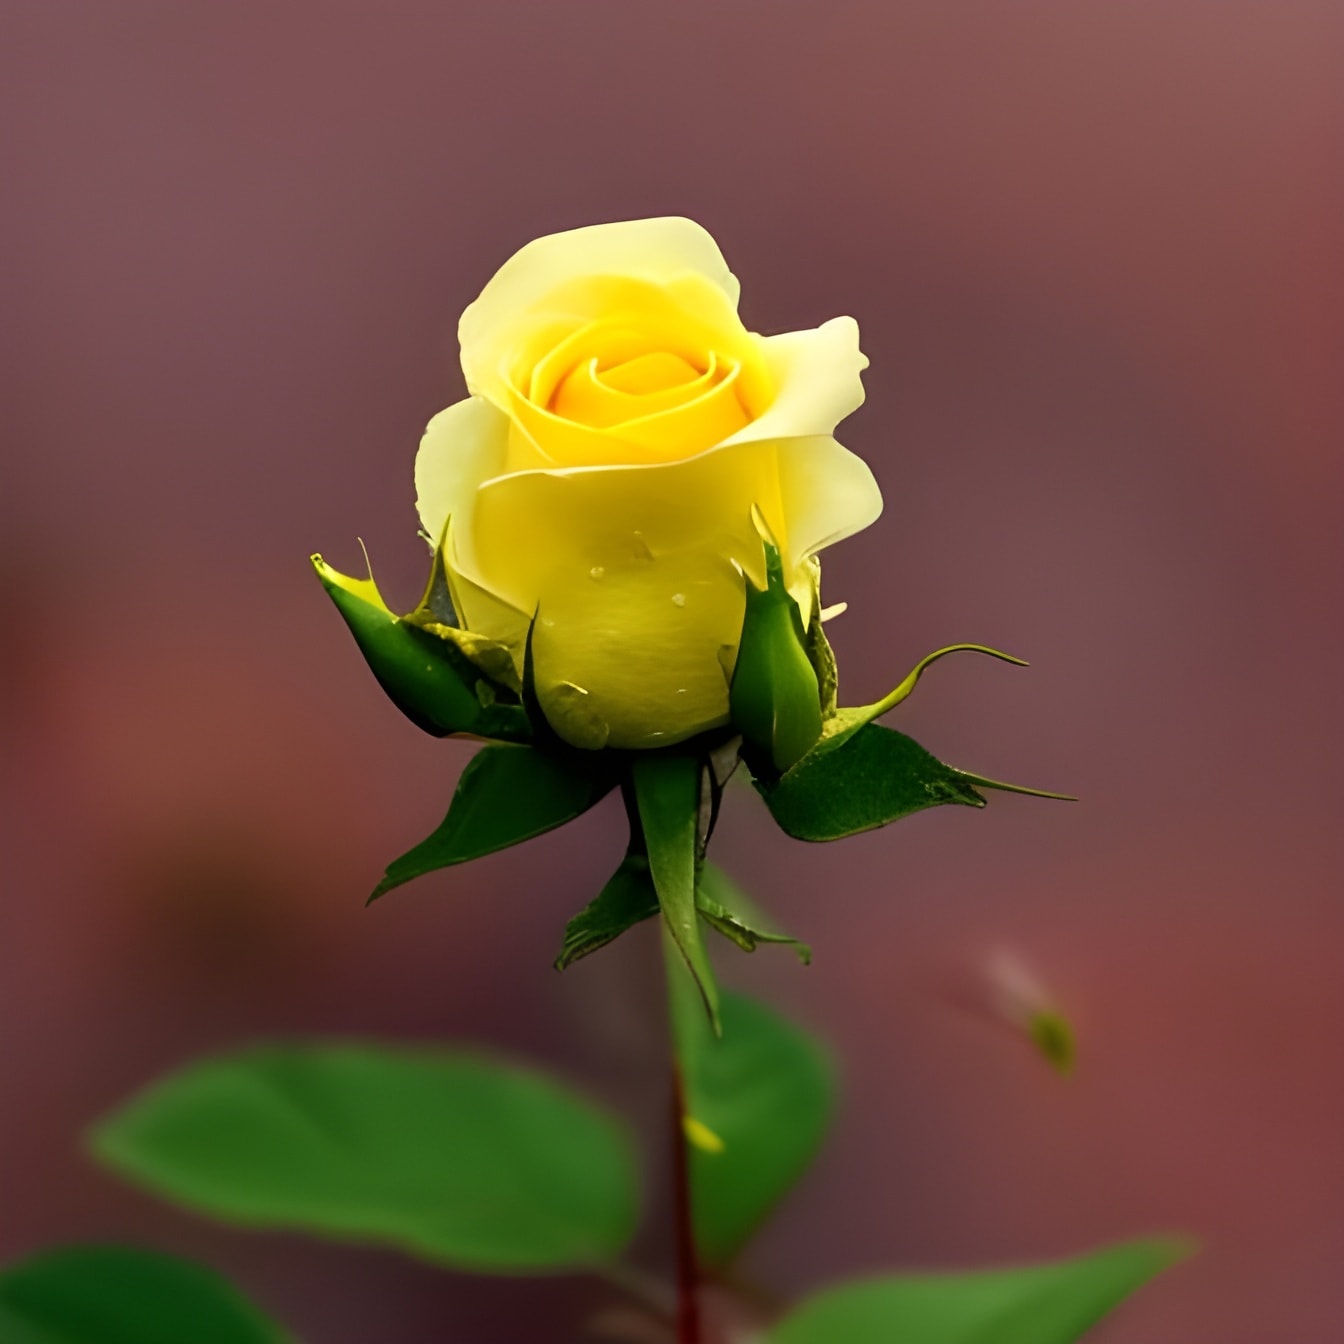 Yellow rose bud close-up – AI art